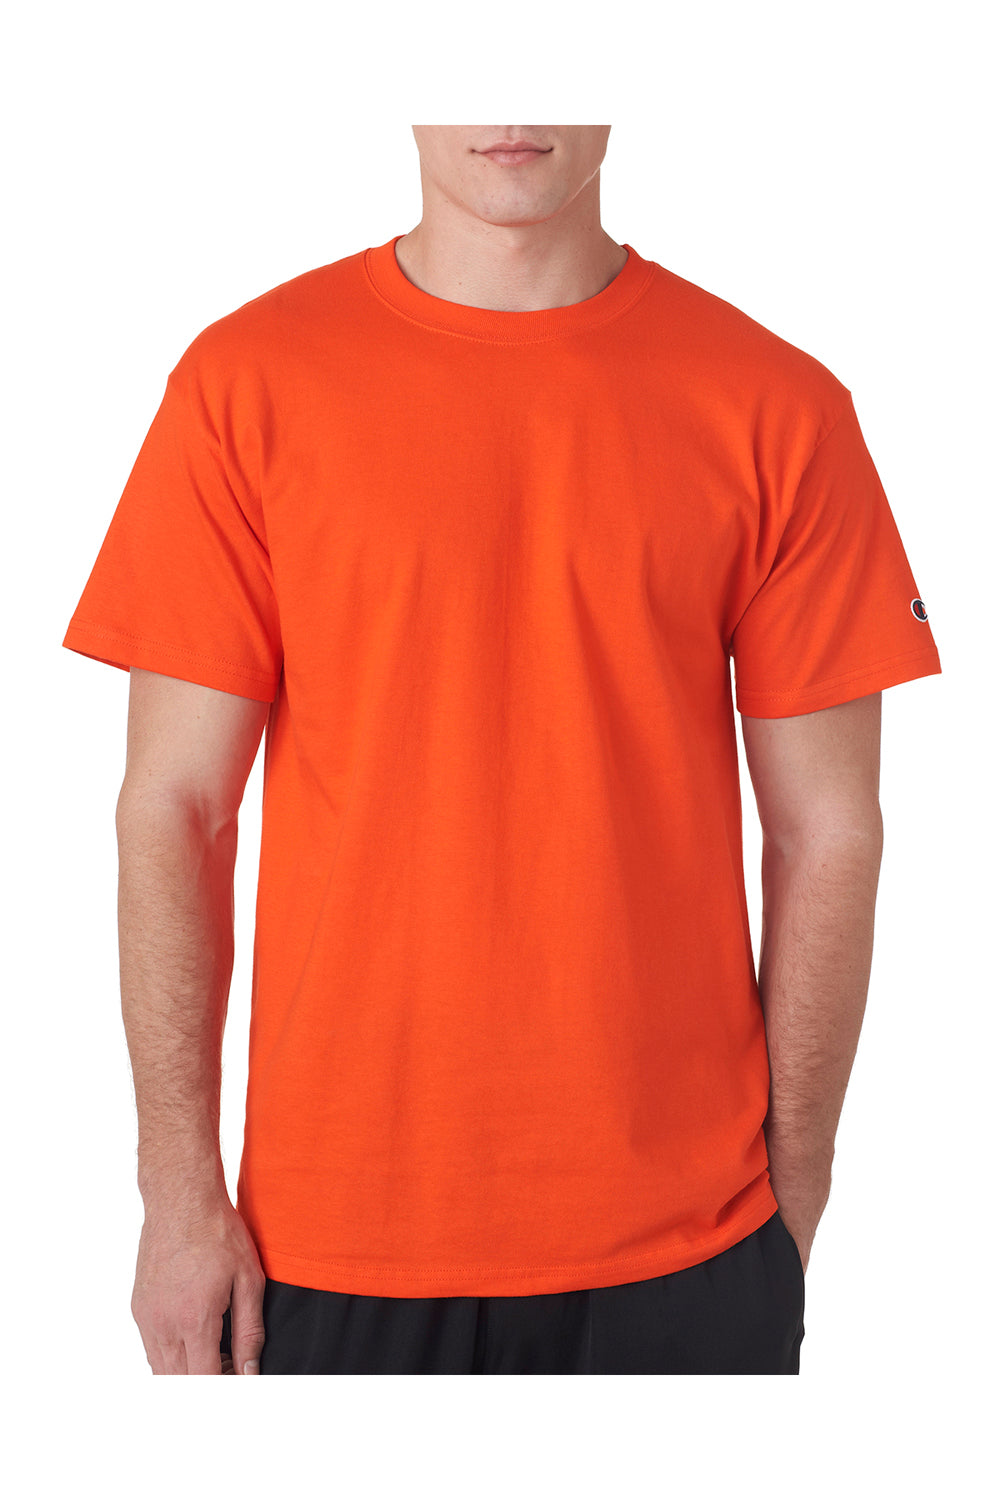 væske systematisk vært Champion T425/T525C Mens Orange Short Sleeve Crewneck T-Shirt —  BigTopShirtShop.com